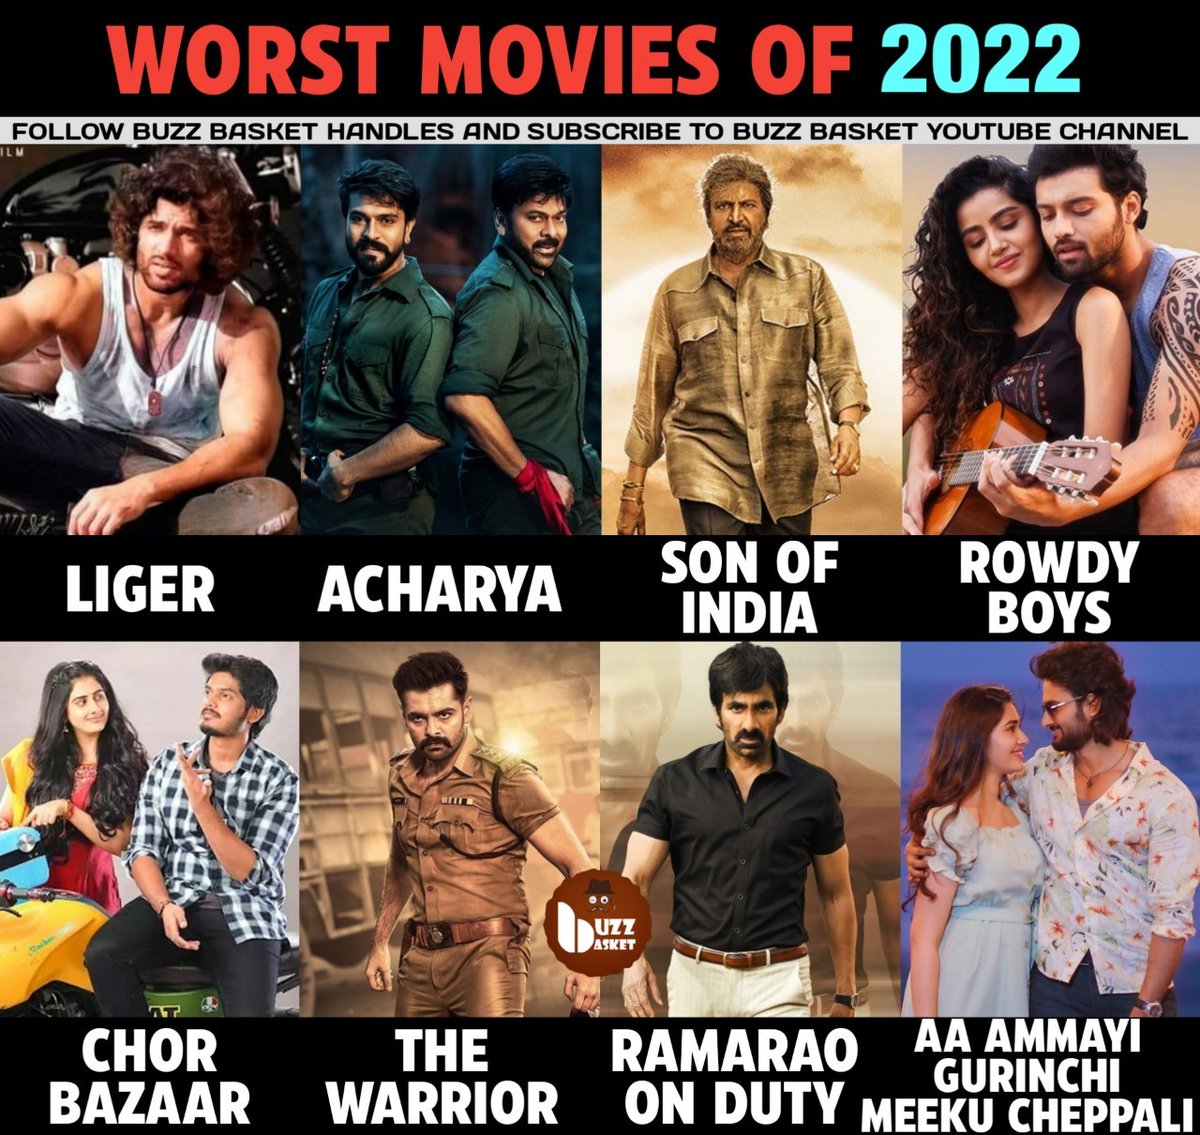 Worst Movies of 2022
#VijayDeverakonda #Liger #Chiranjeevi #RamCharan #Acharya #MohanBabu #SonofIndia #AshishReddy #RowdyBoys #AkashPuri #ChorBazaar #RamPothineni #TheWarrior #RaviTeja #RamaRaoOnDuty #SudheerBabu #AaAmmayiGurinchiMeekuCheppali